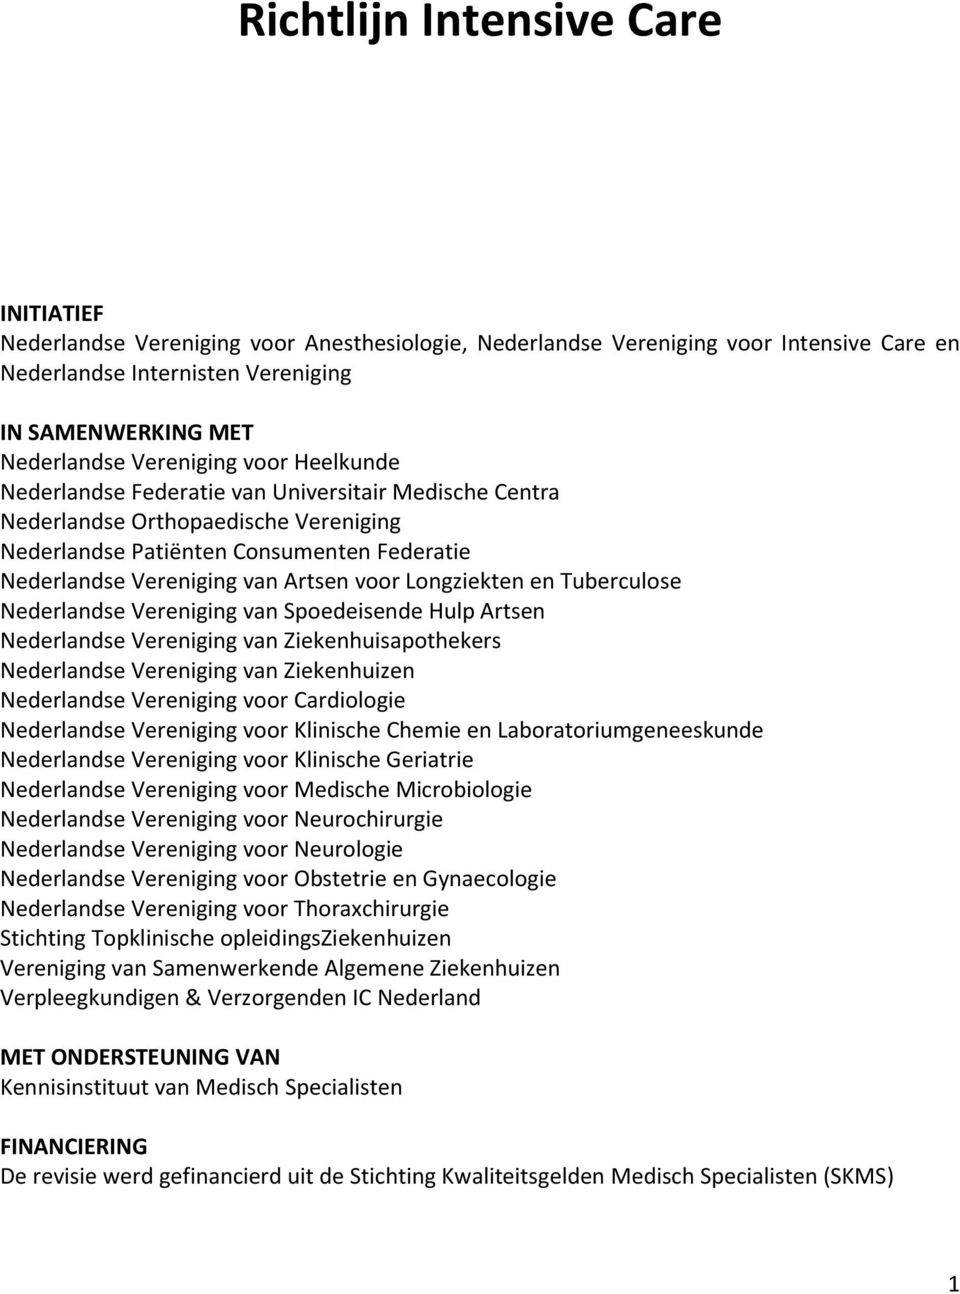 voor Longziekten en Tuberculose Nederlandse Vereniging van Spoedeisende Hulp Artsen Nederlandse Vereniging van Ziekenhuisapothekers Nederlandse Vereniging van Ziekenhuizen Nederlandse Vereniging voor